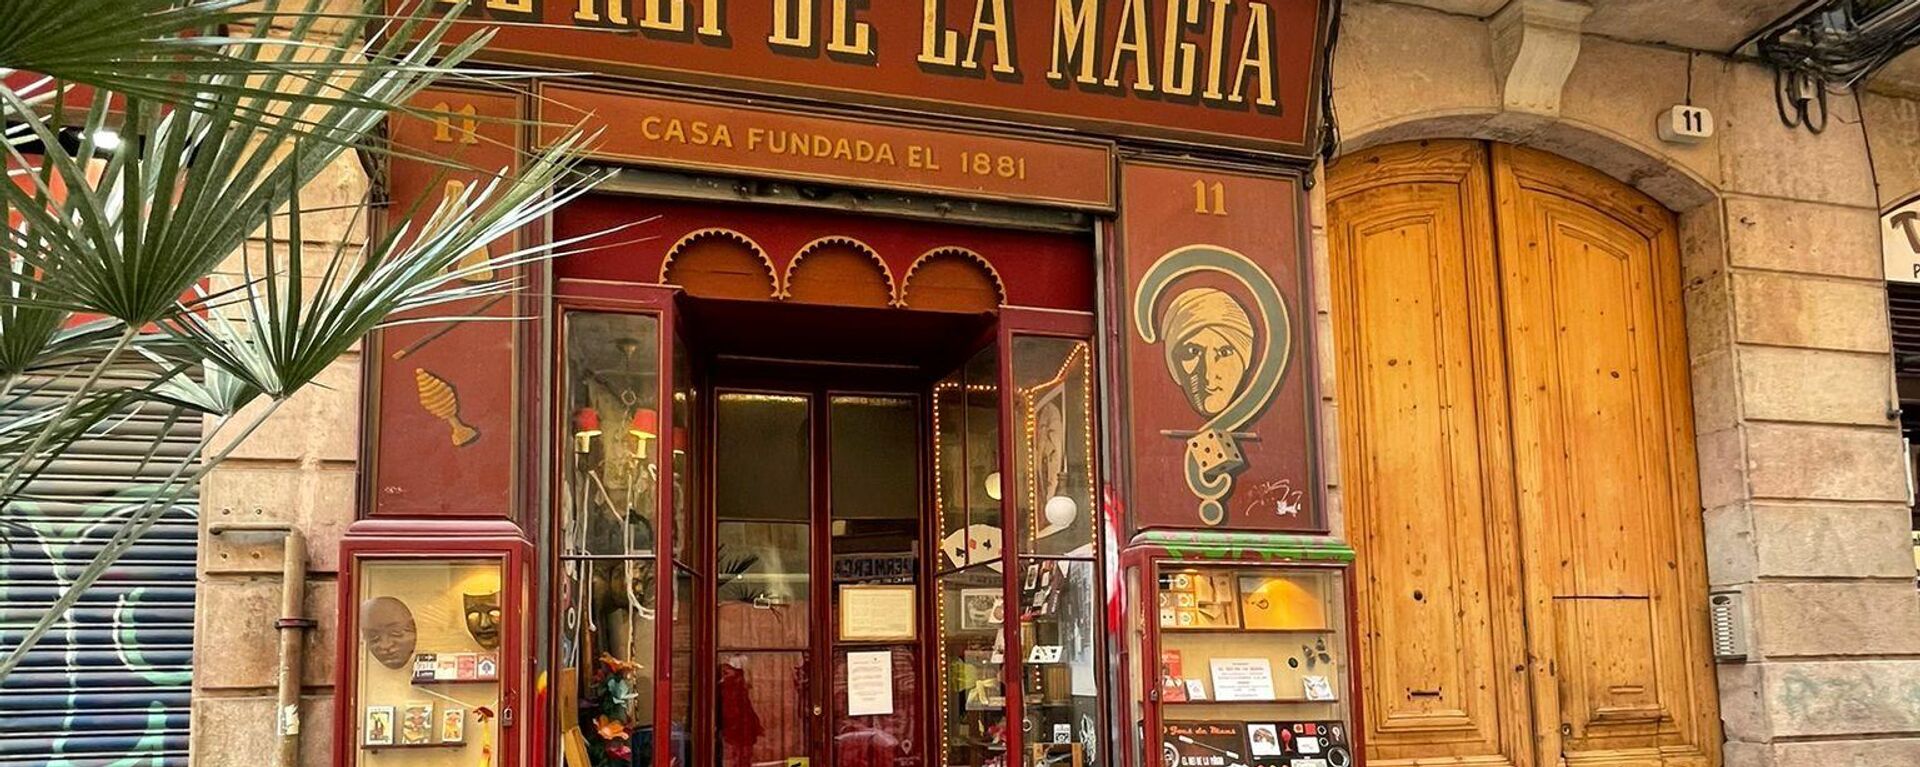 La tienda del Rei de la Màgia está situada en el barrio El Born (Barcelona) - Sputnik Mundo, 1920, 25.07.2021